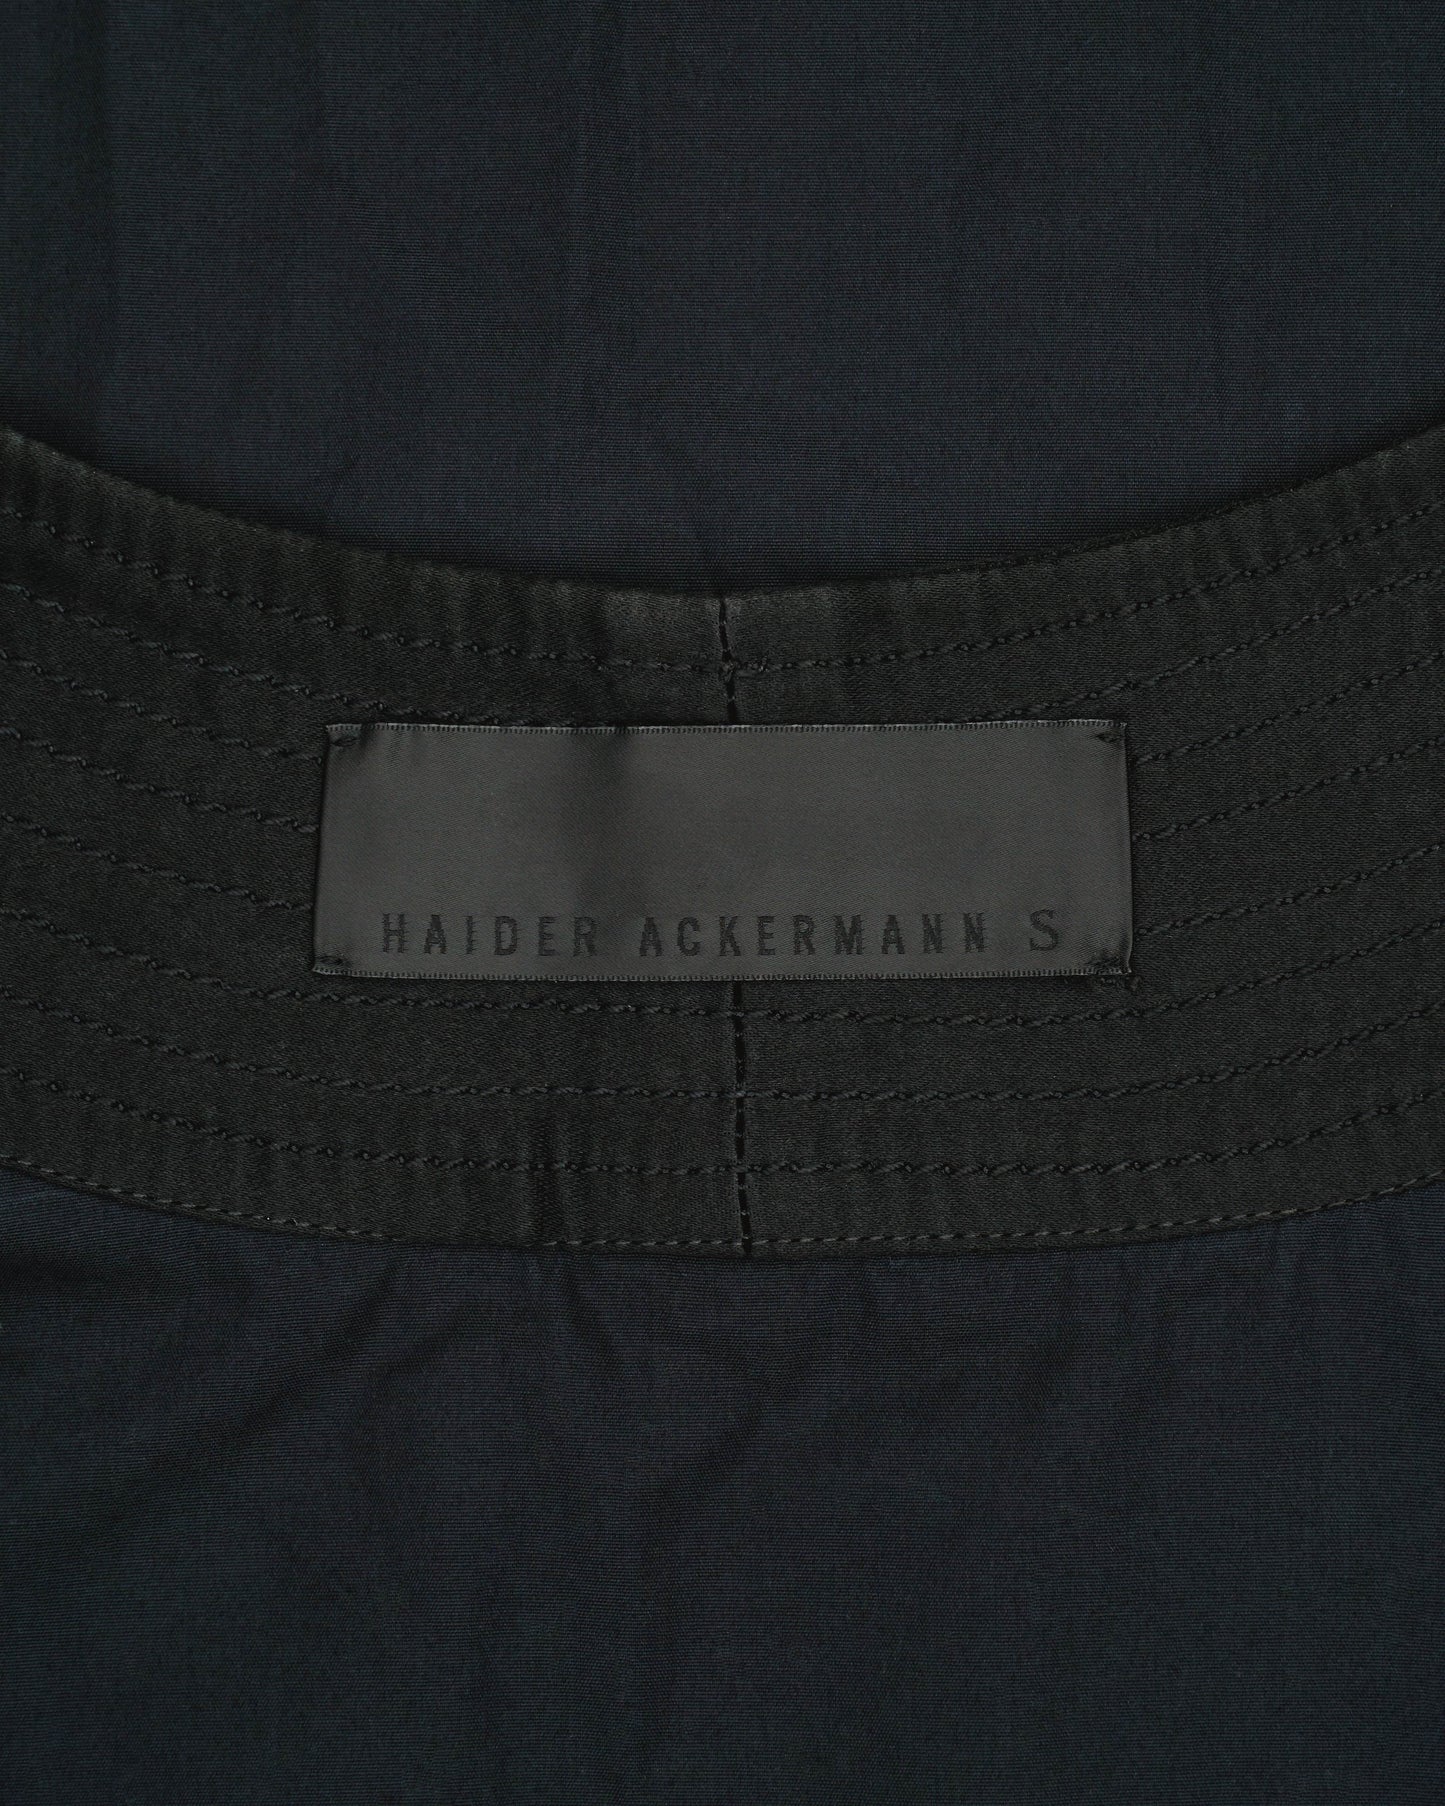 Haider Ackermann SS15 Kimono Shirt